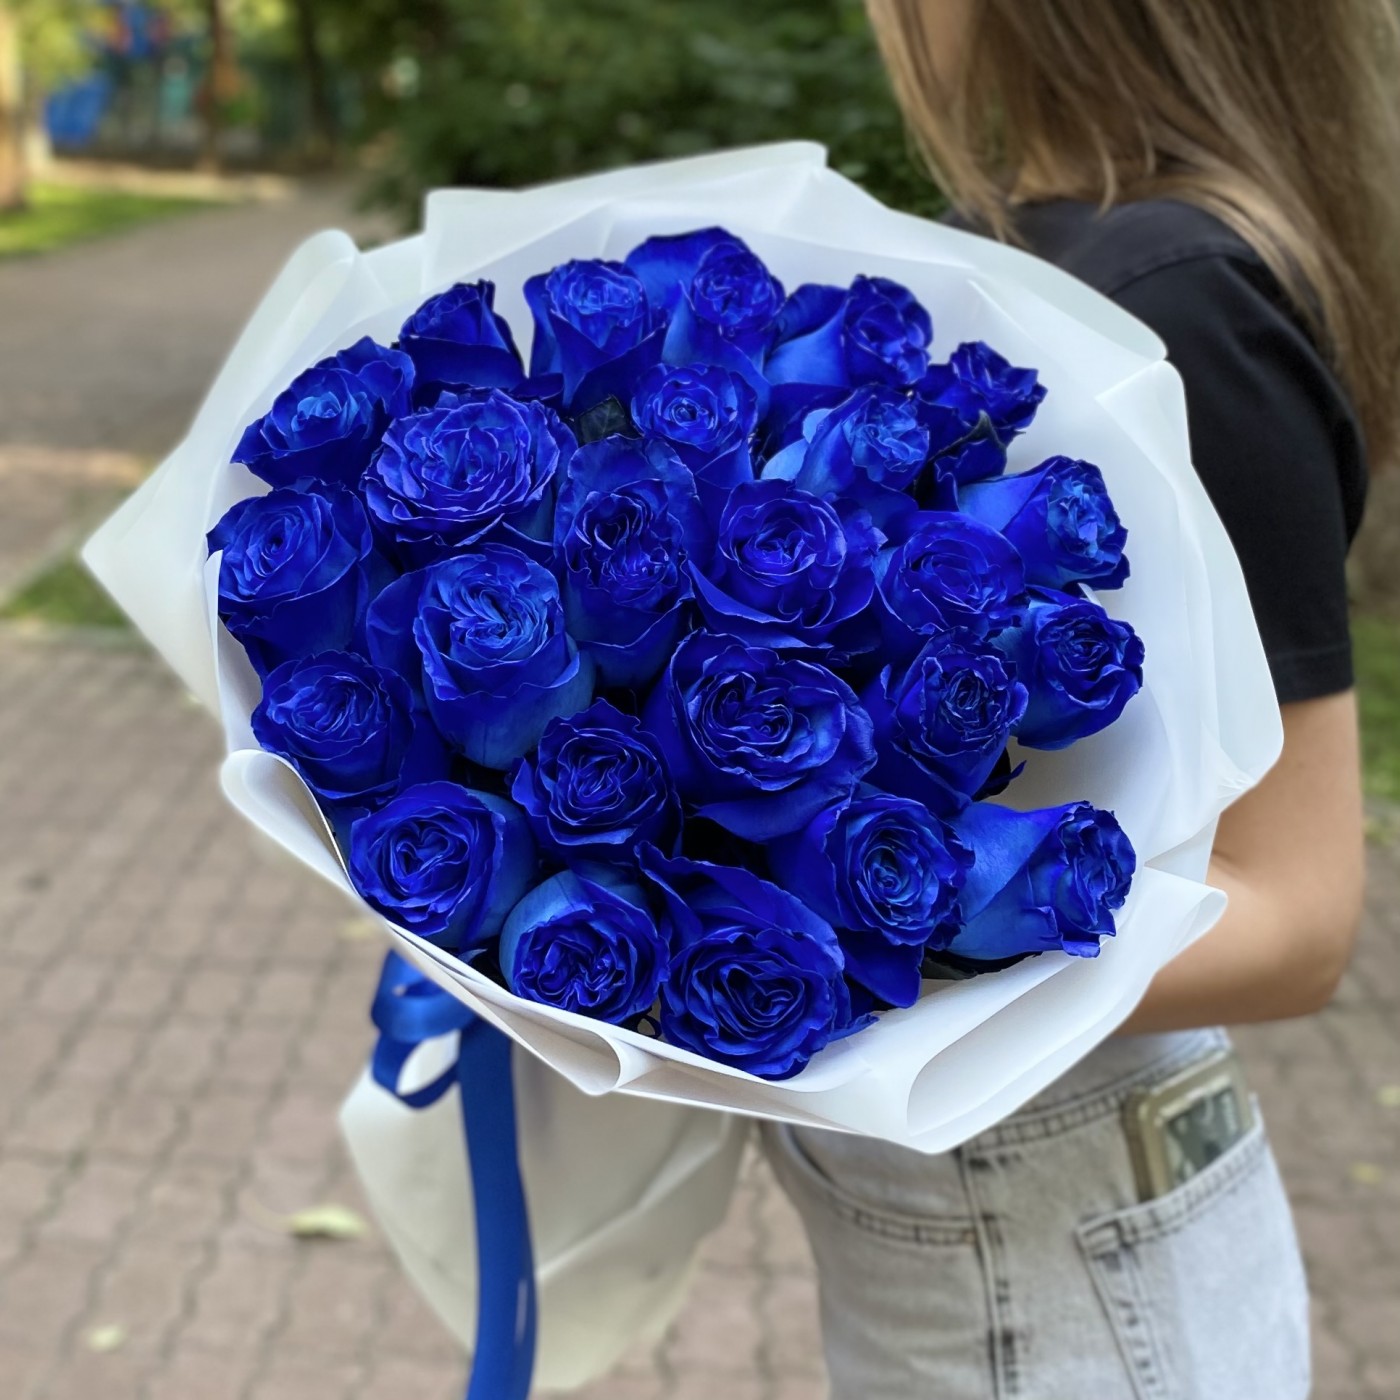 25 синих роз